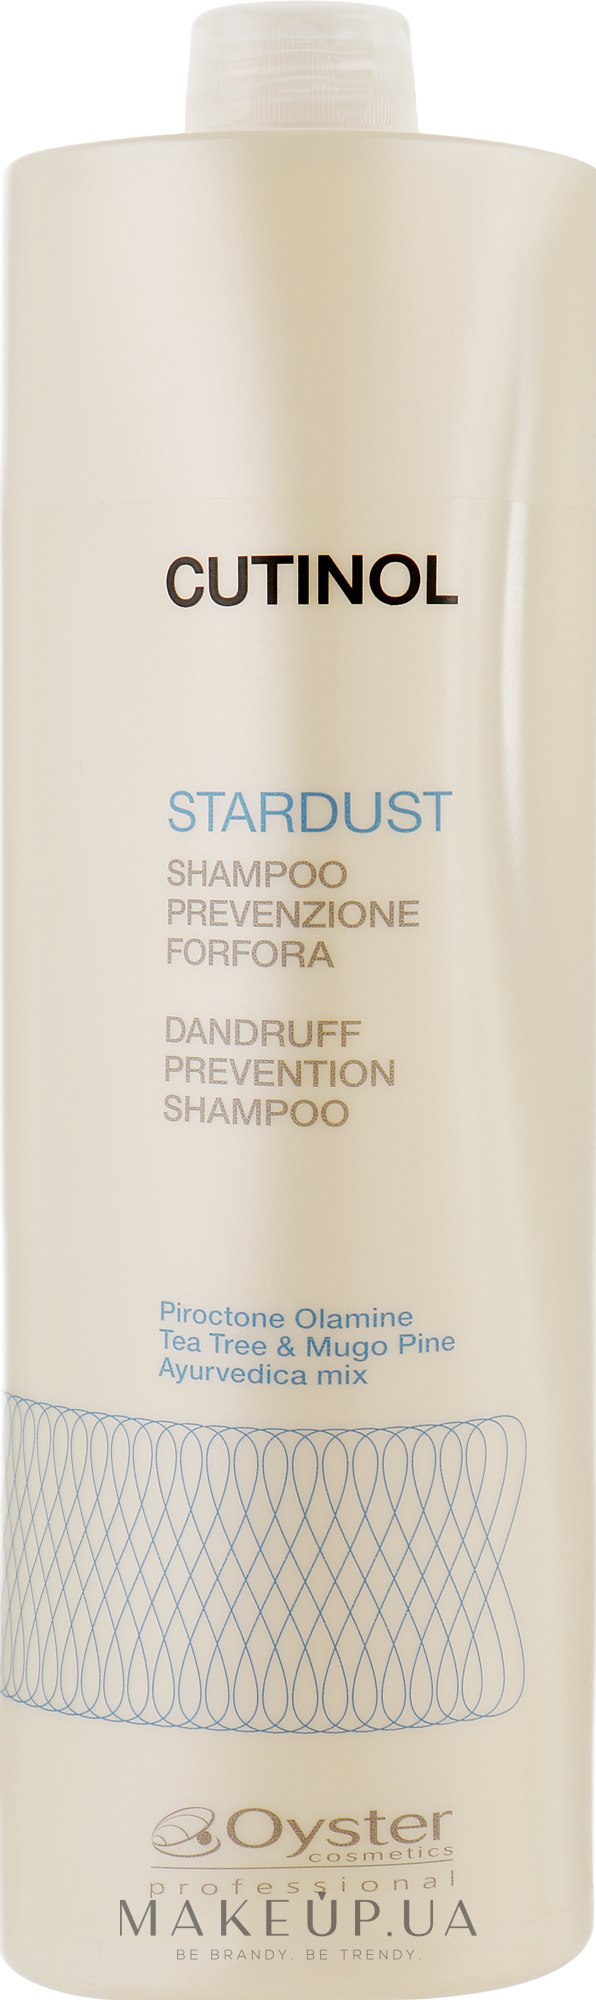 Шампунь против перхоти - Oyster Cosmetics Cutinol Stardust Shampoo — фото 1000ml